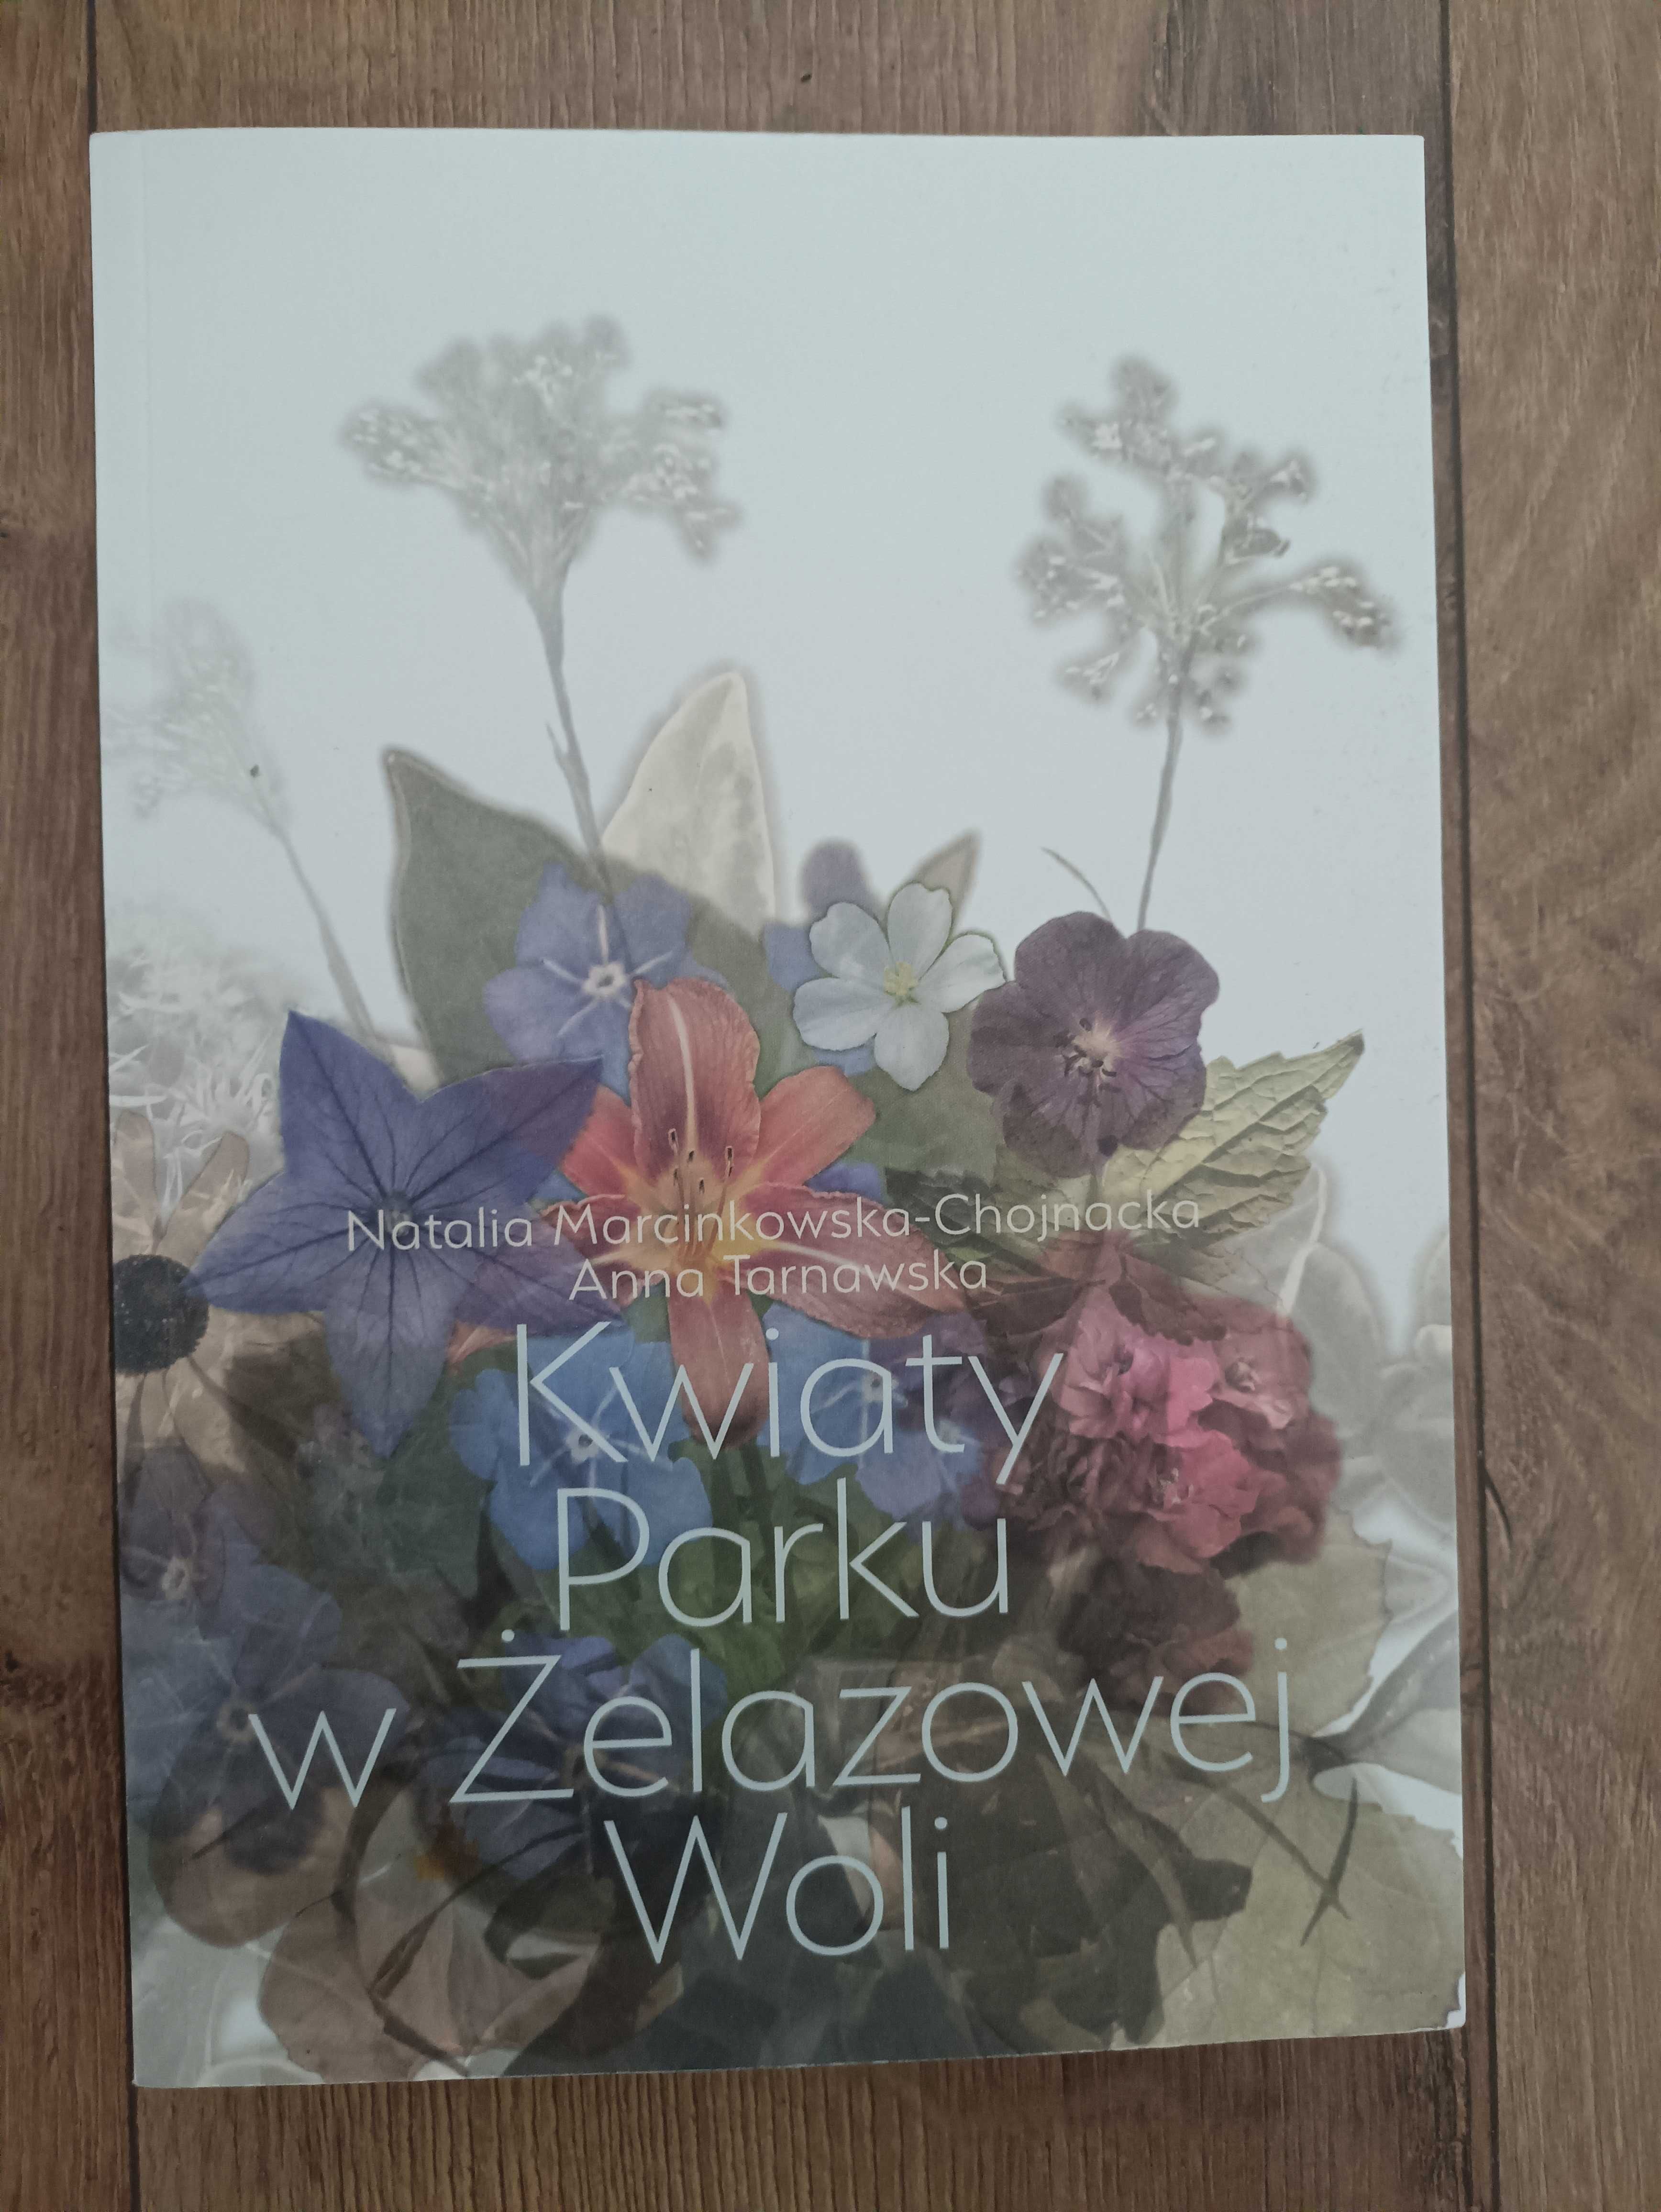 Kwiaty Parku w Żelazowej Woli
A. Tarnawska N.Marcinkowska-Chojnacka